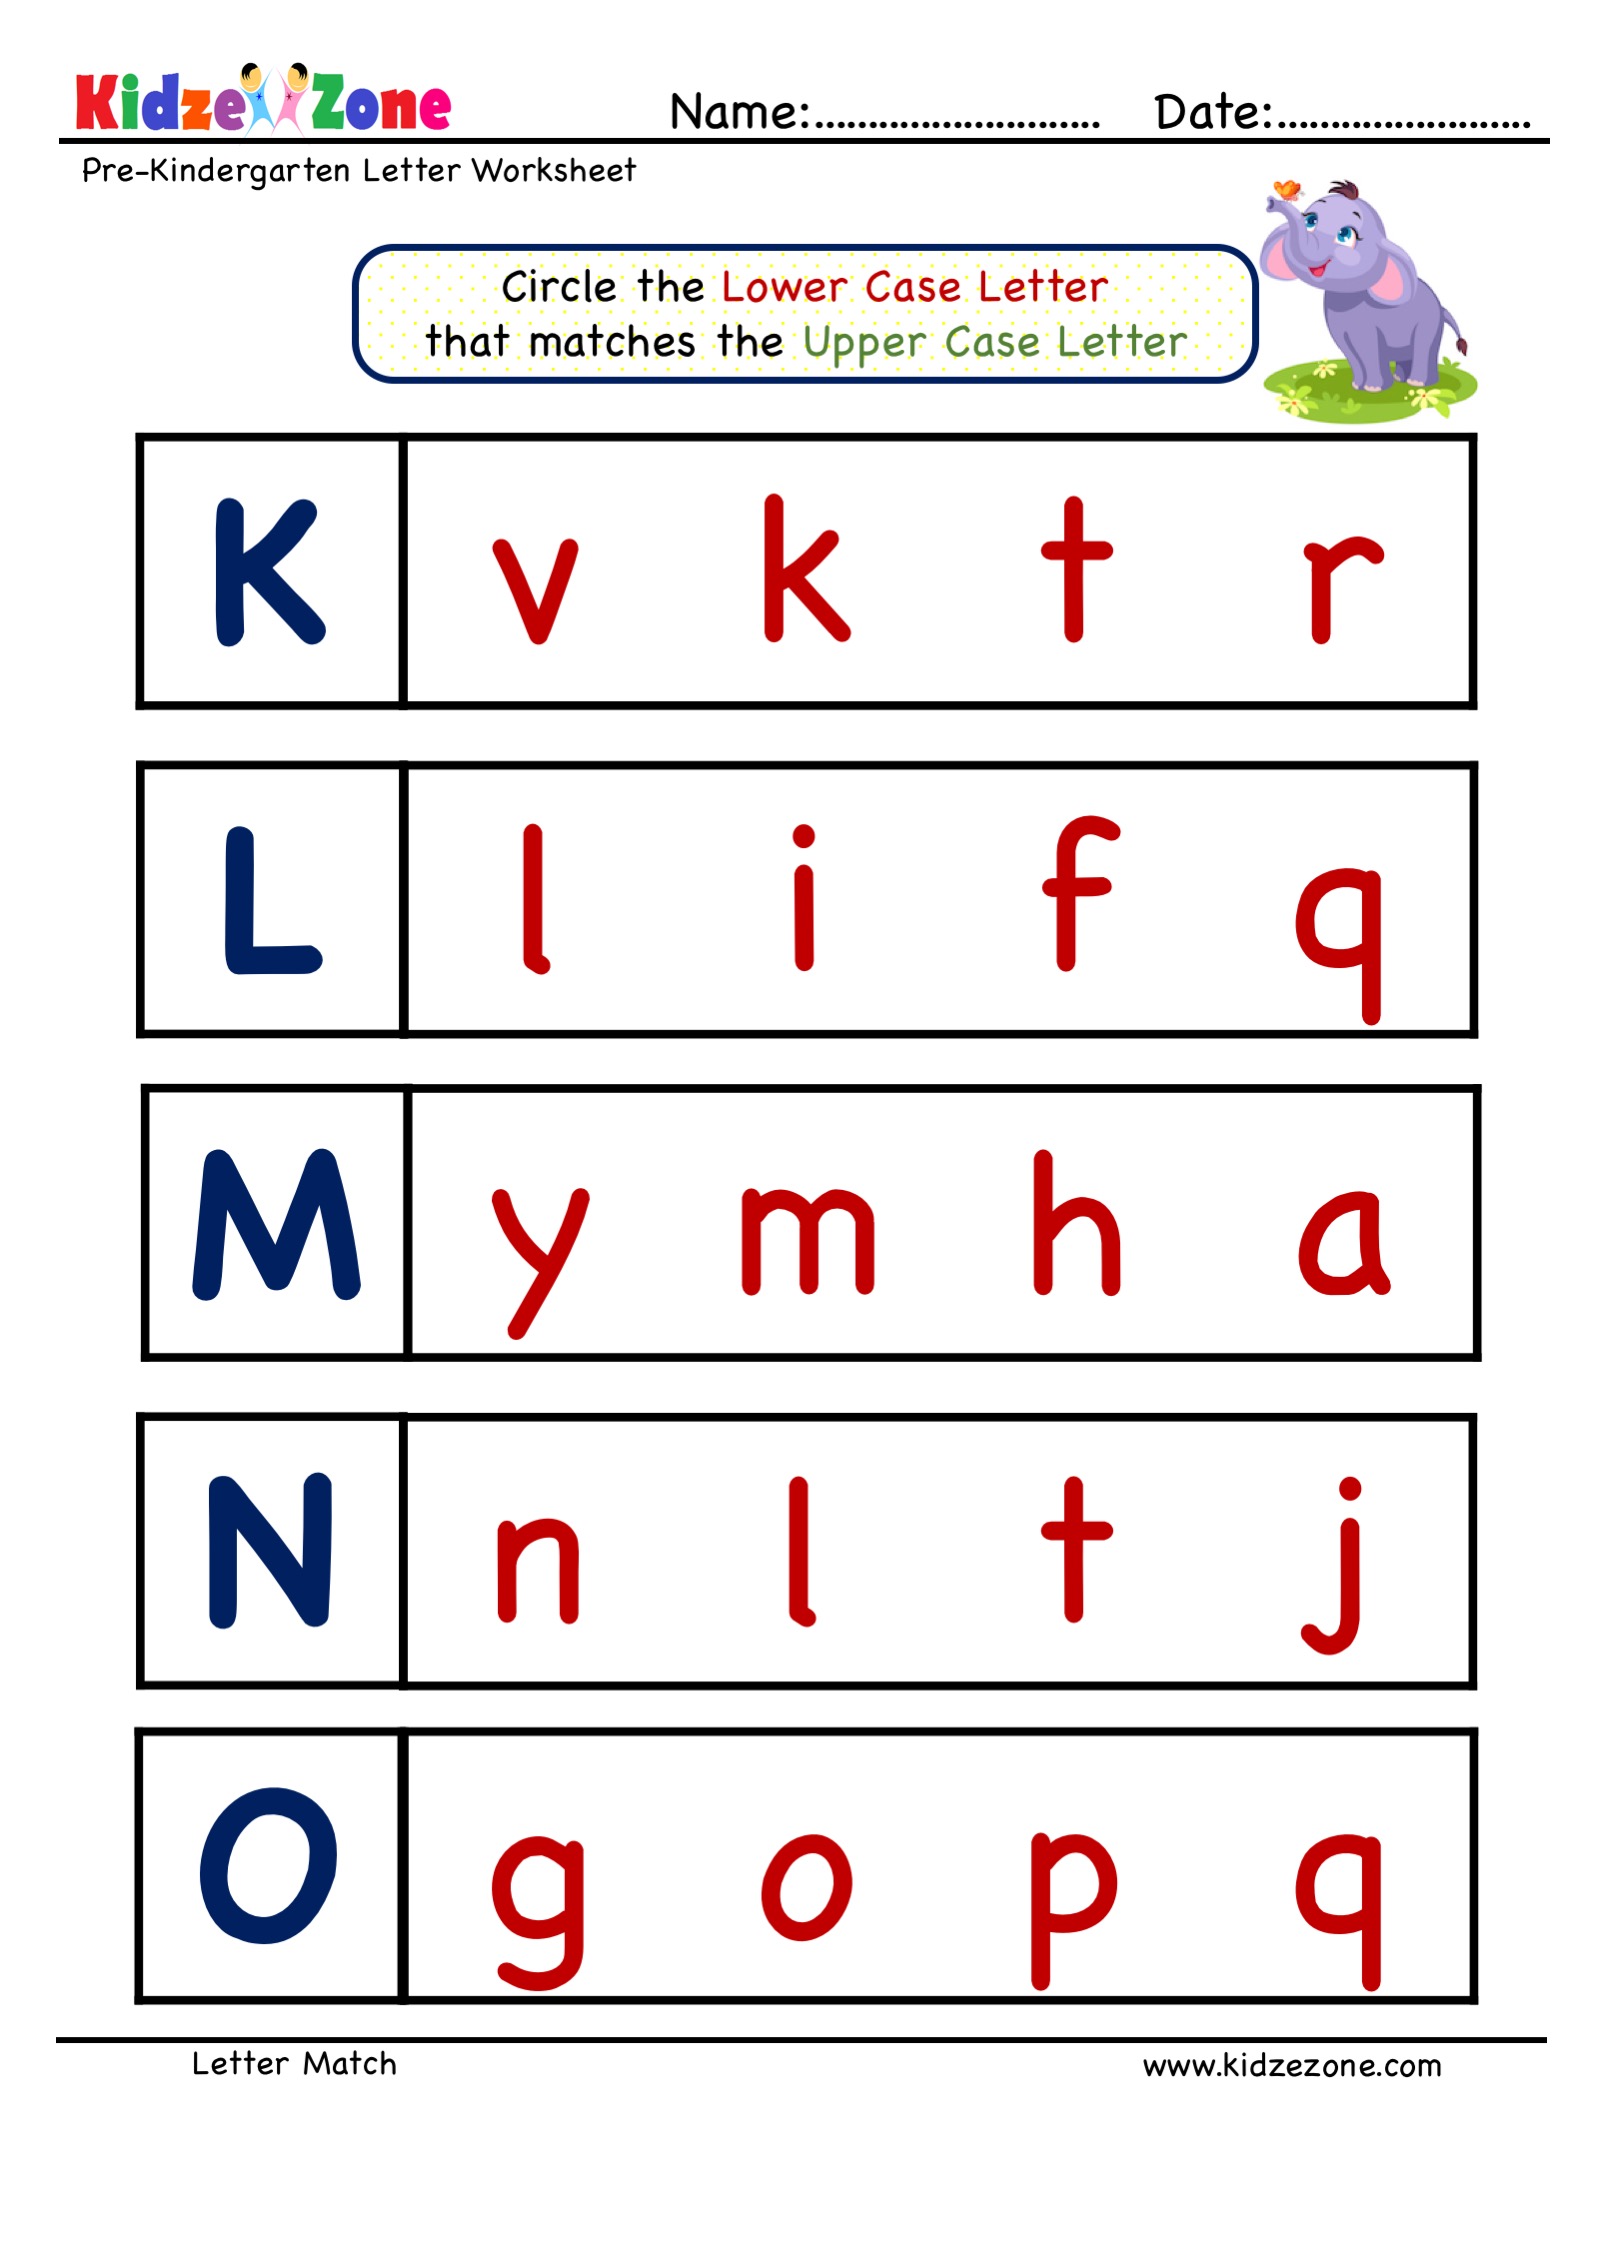 Letter Match Worksheet For Preschoolers